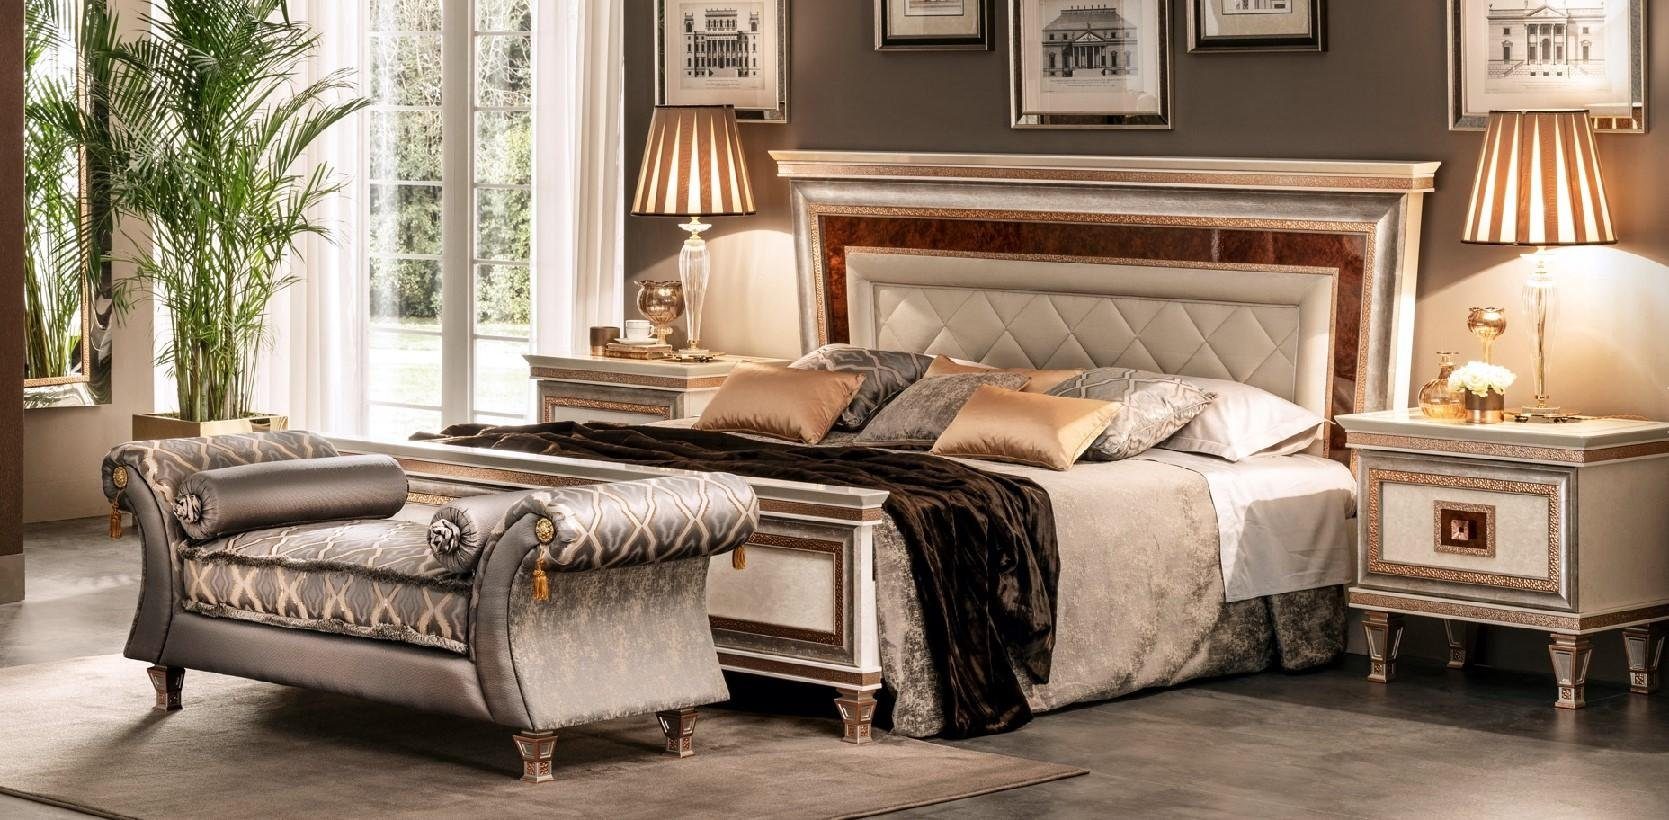 JVmoebel Schlafzimmer-Set Luxus 4tlg. Schlafzimmer Set Bett + Chaiselongue + 2x Nachttisch